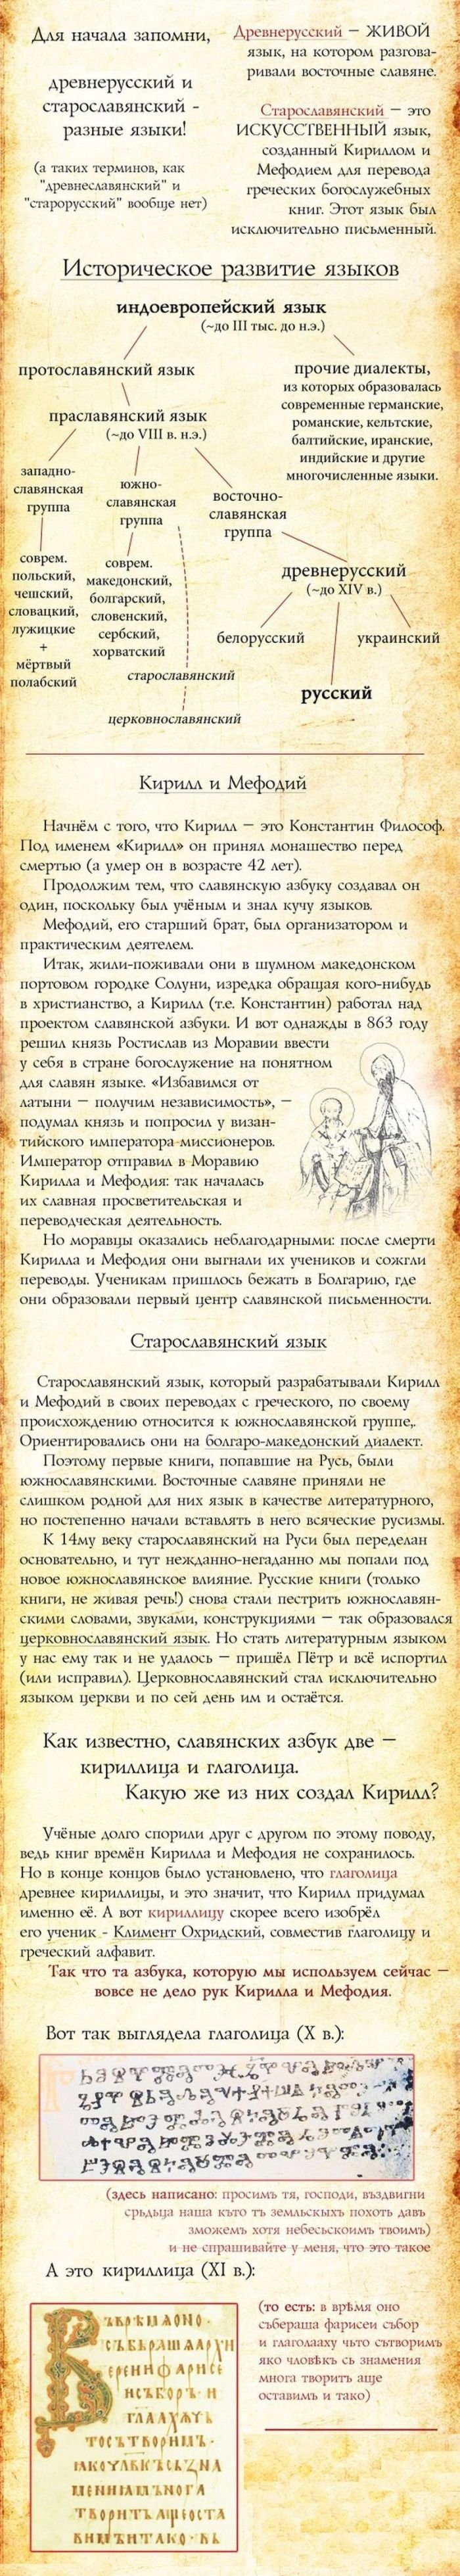 История русского языка (4 фото)